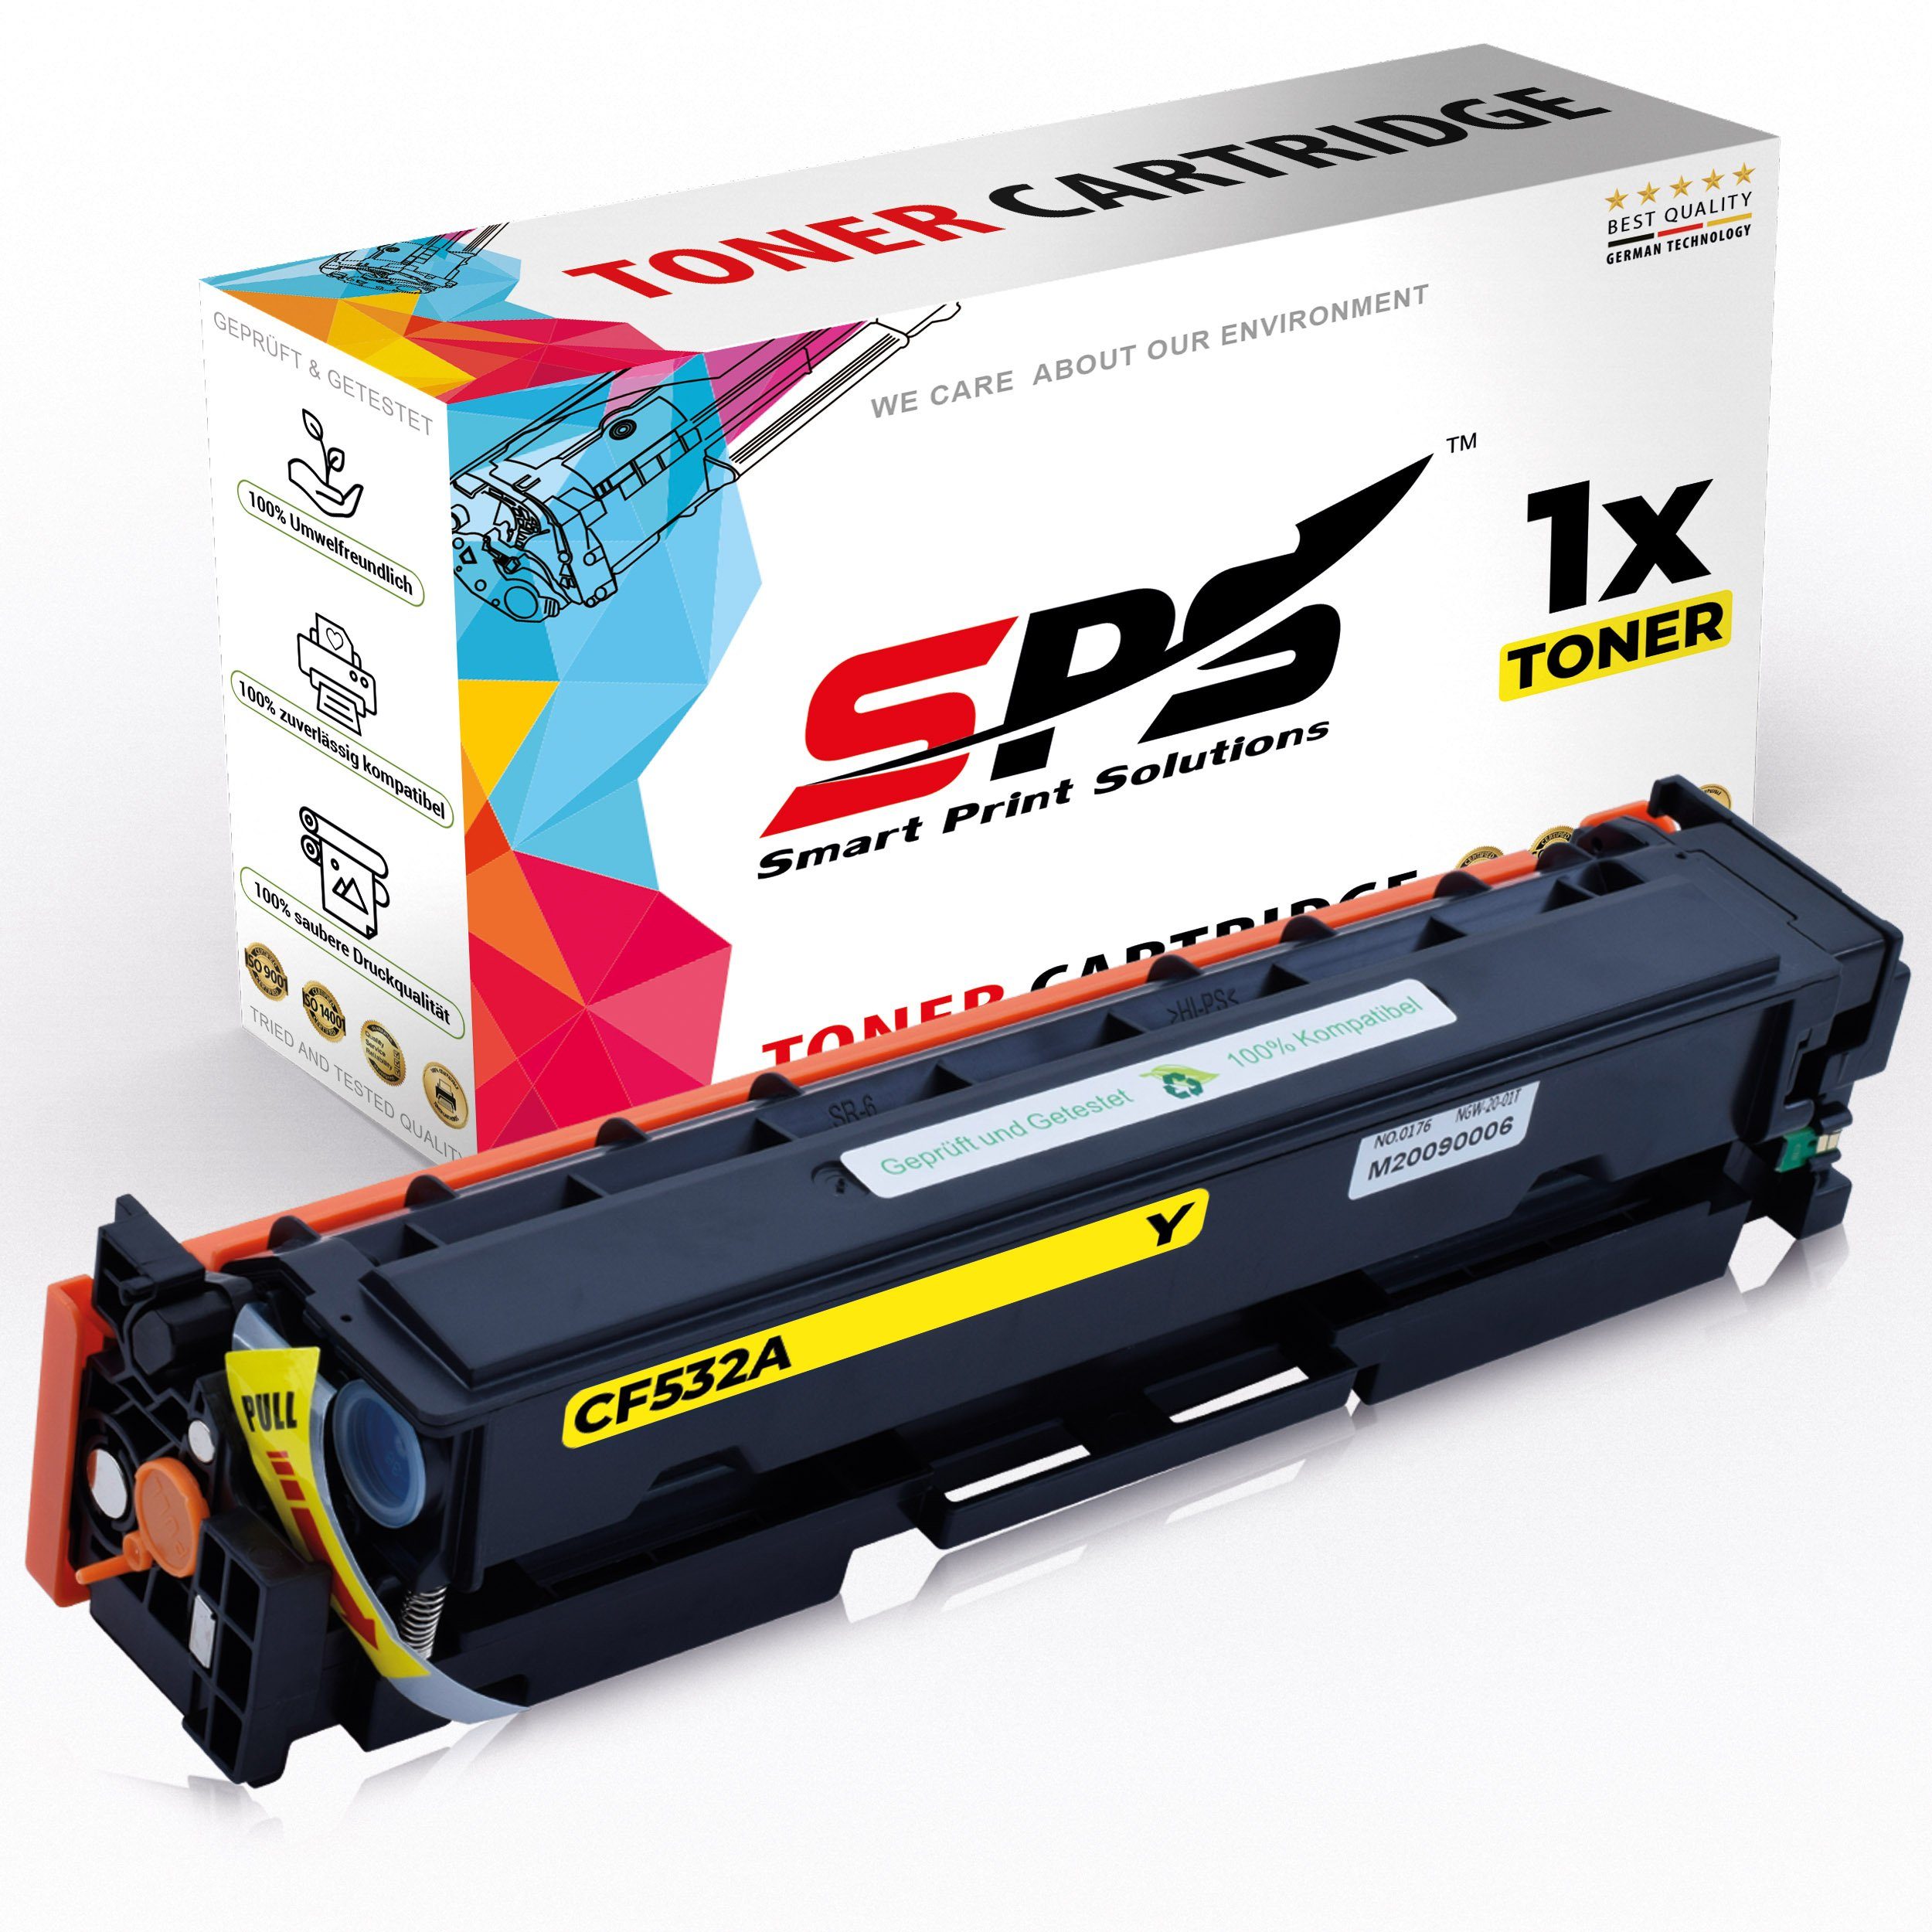 Pro SPS Kompatibel Laserjet CF532A Tonerkartusche Pack, M180N, x MFP HP Gelb) Color Toner (Für (1er 1-St., 1 für HP